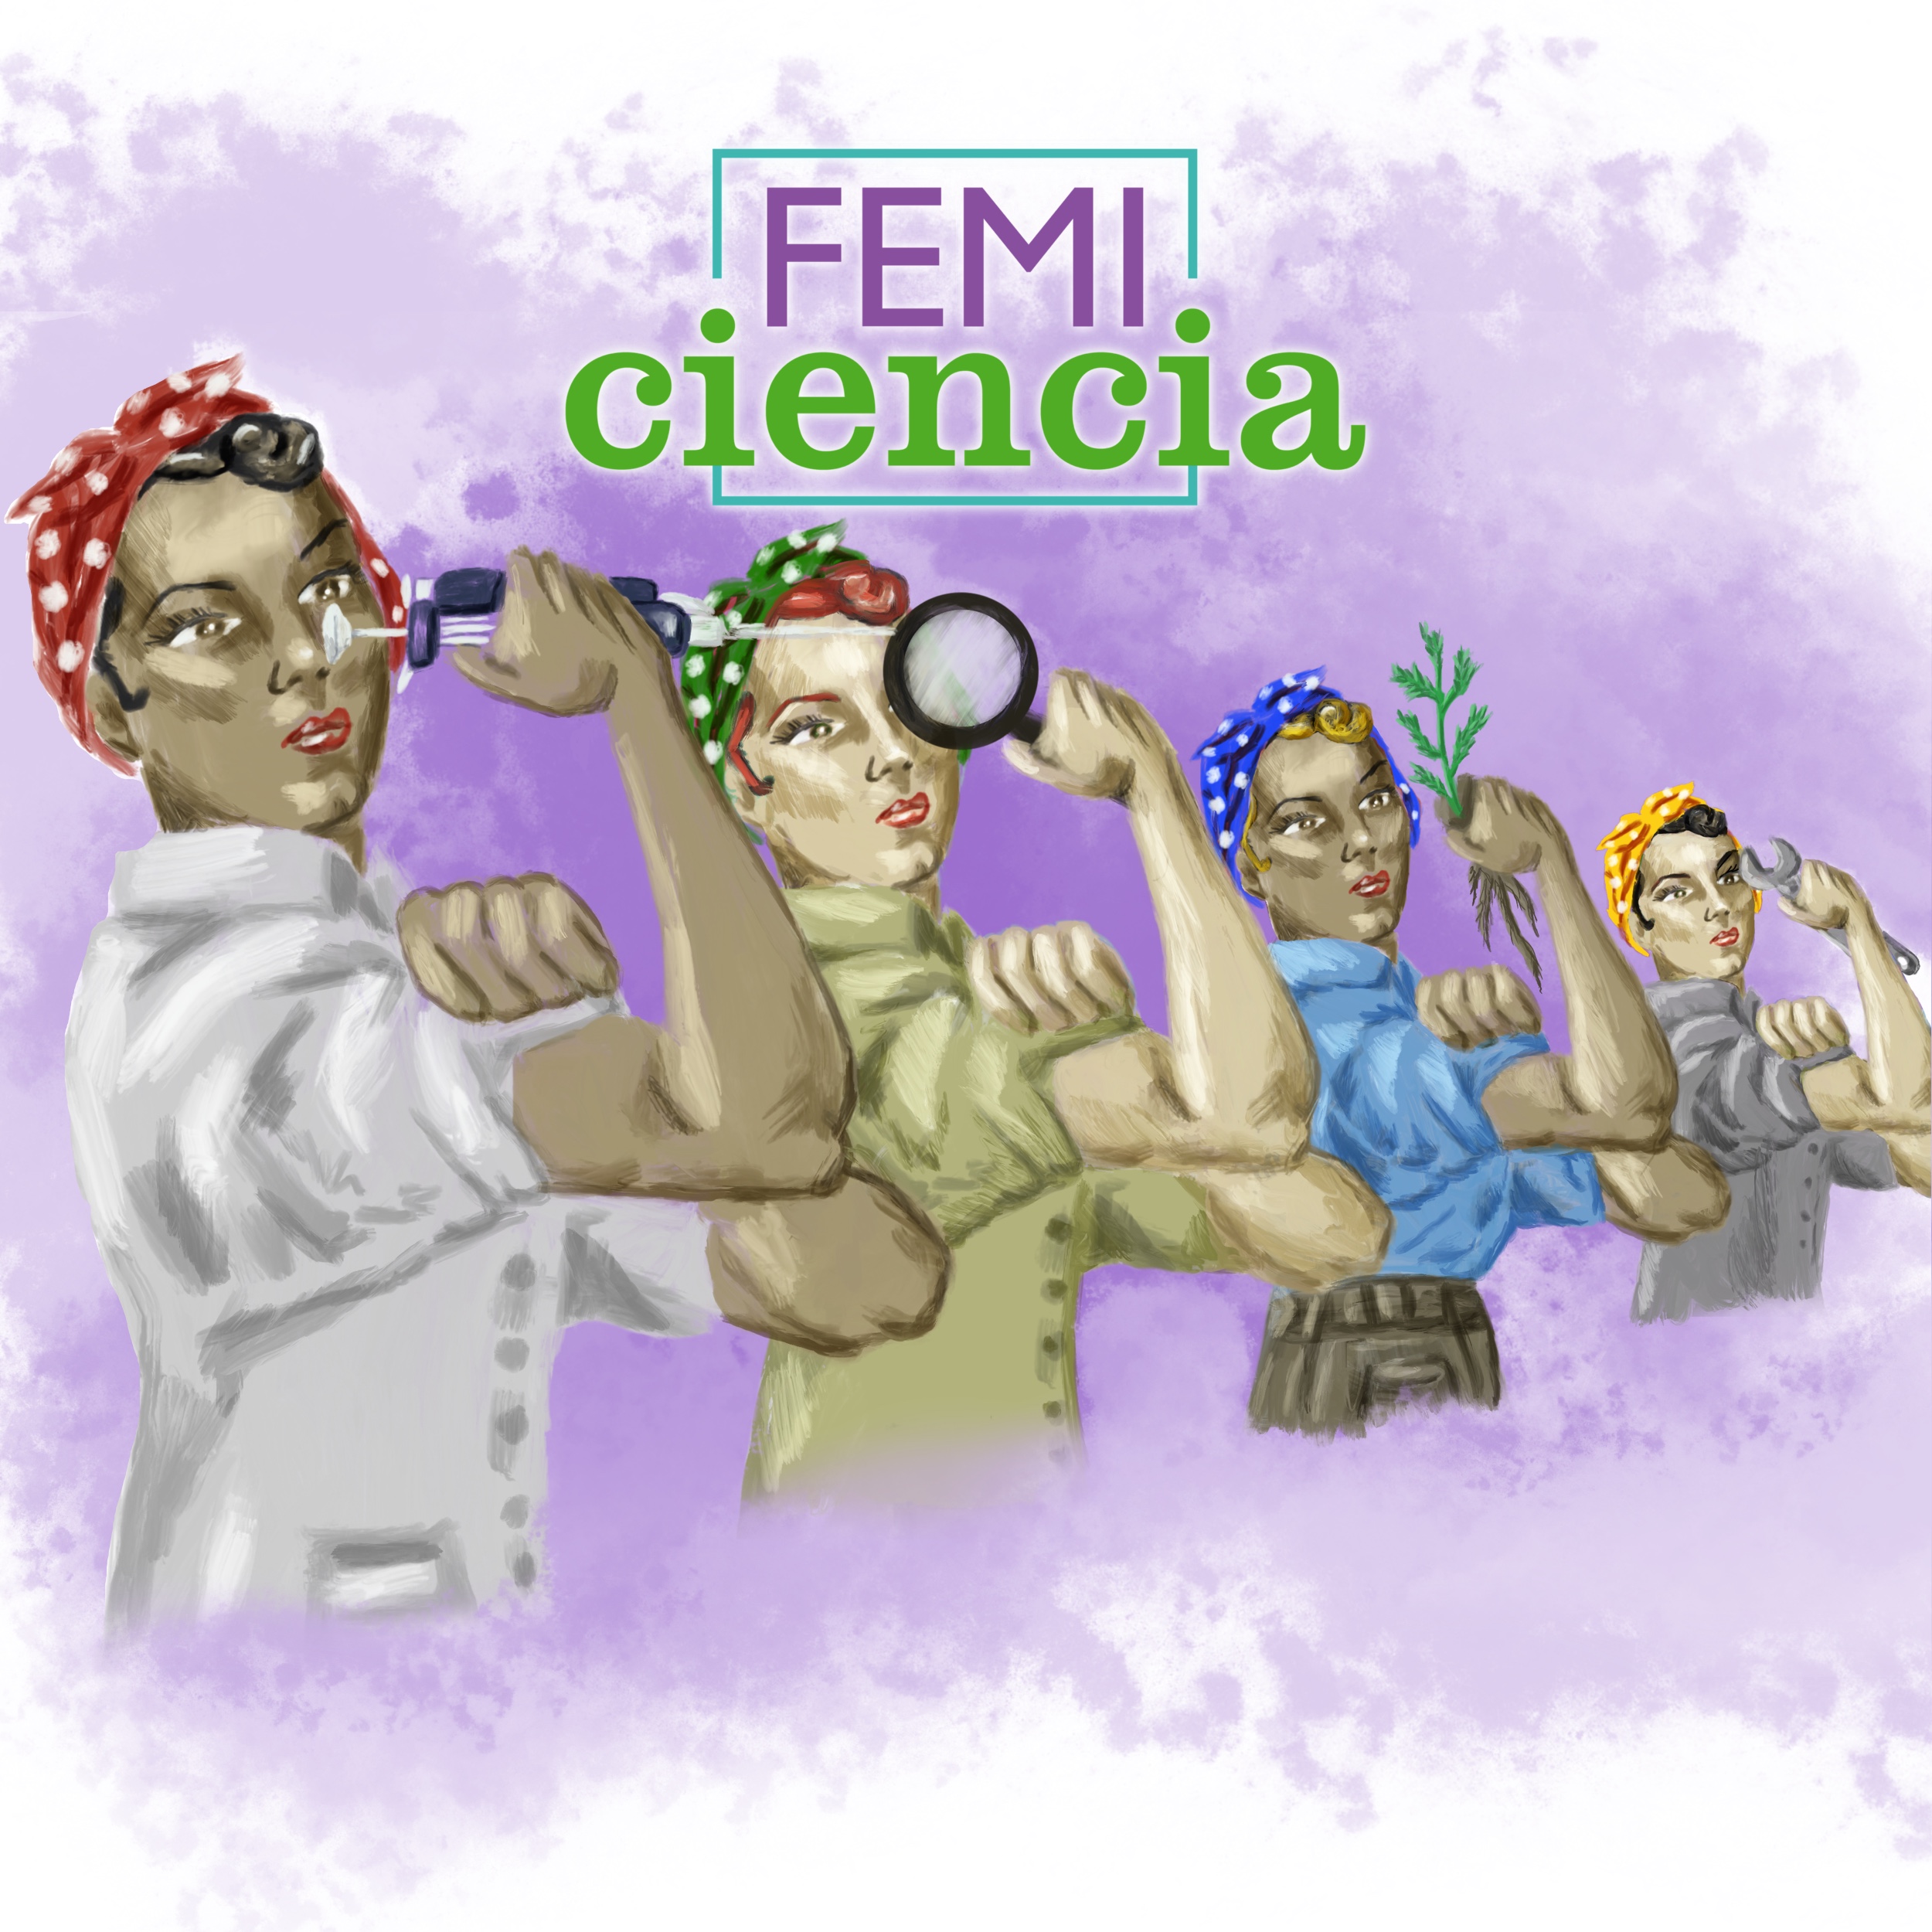 Newsletter Vol. XIX - Ciencia bajo una praxis feminista: desafíos actuales